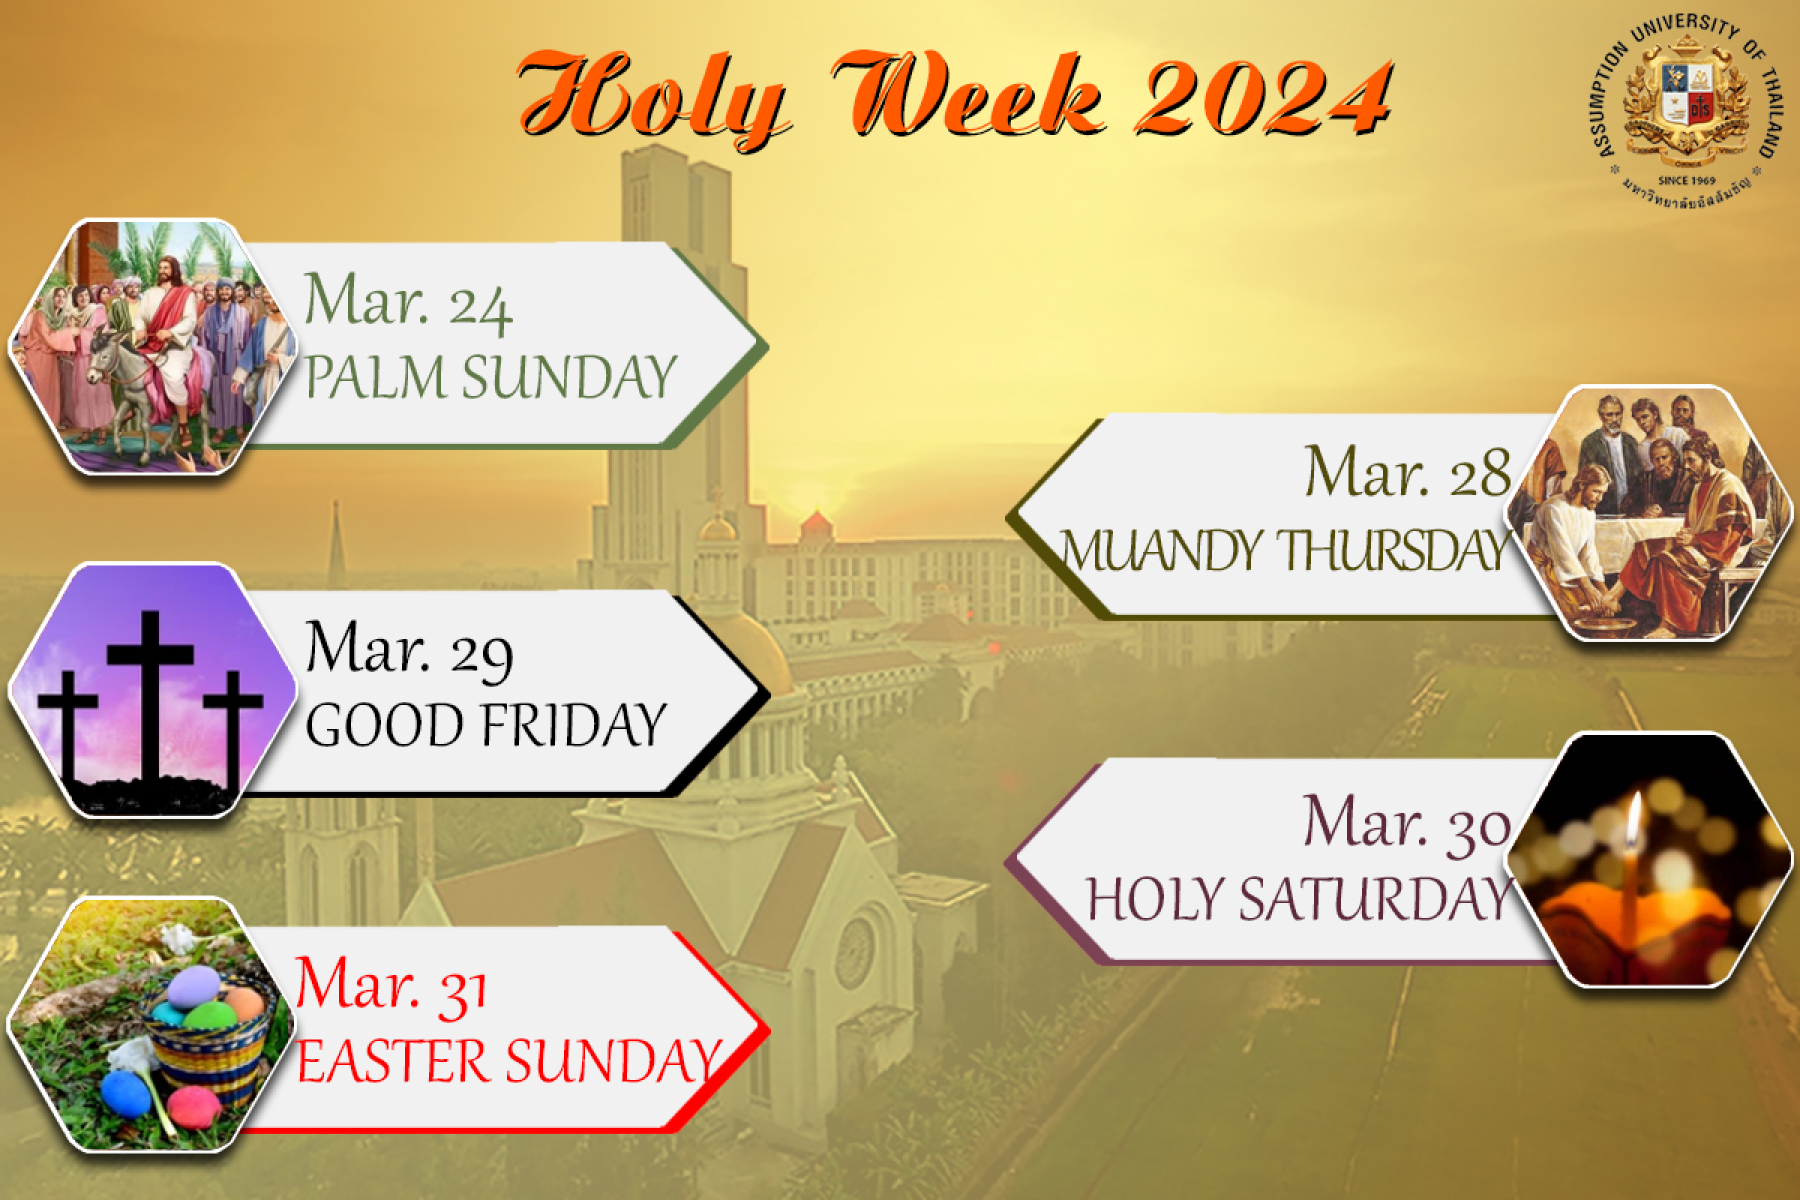 Holy Week at AU: Reflection, Community, Celebration